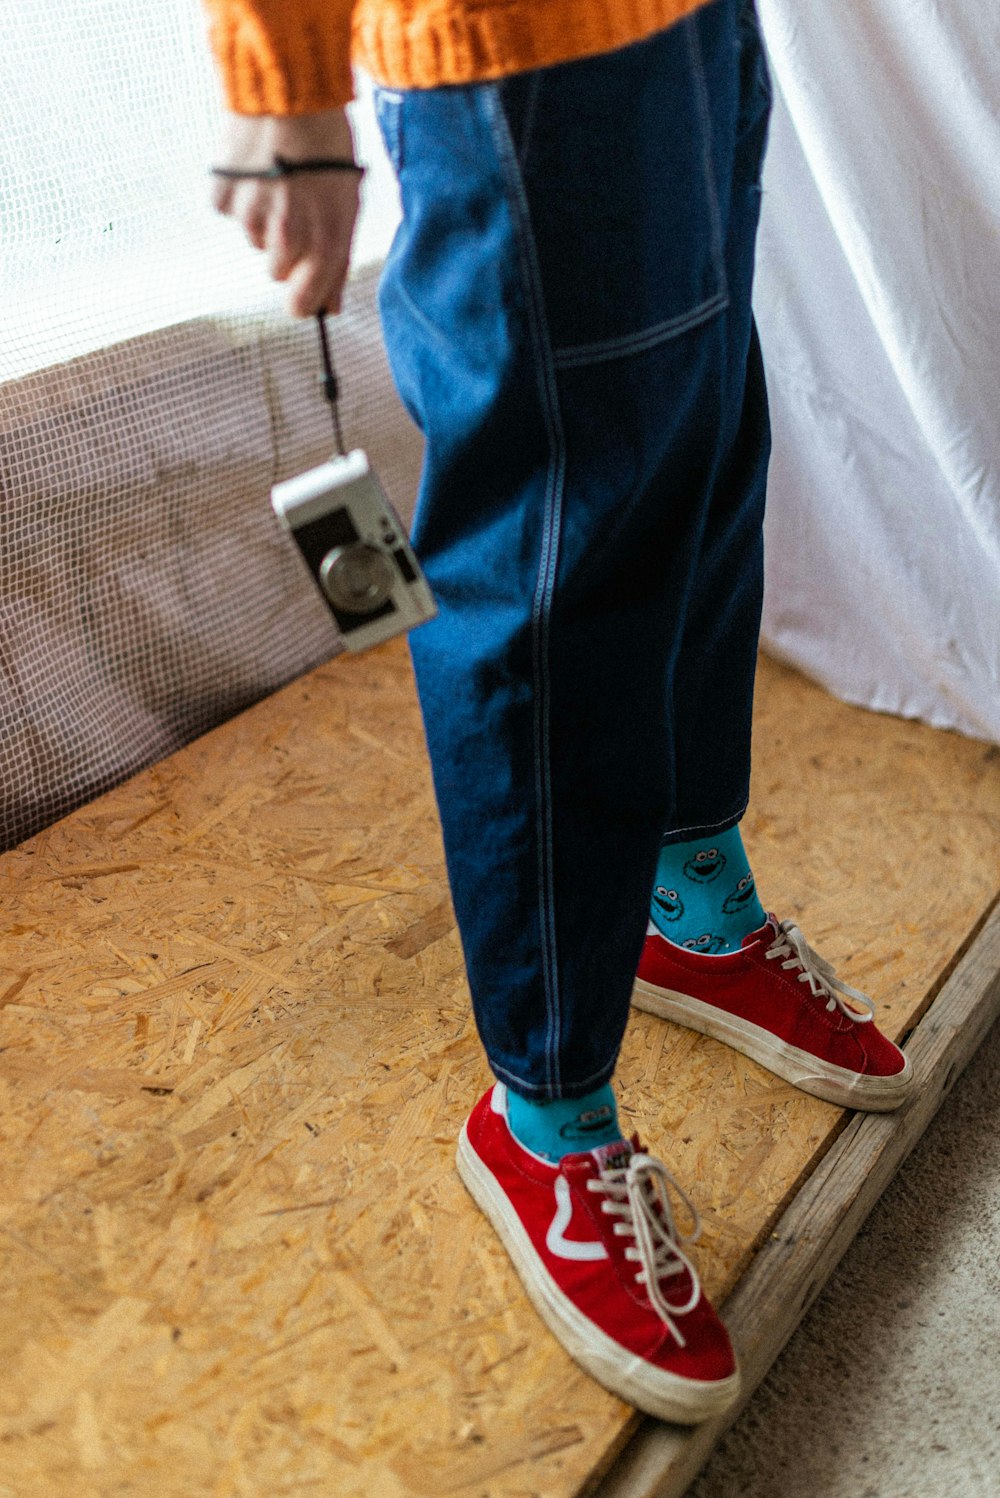 Foto con jeans azules y zapatillas converse all star rojas – Imagen Persona gratis en Unsplash